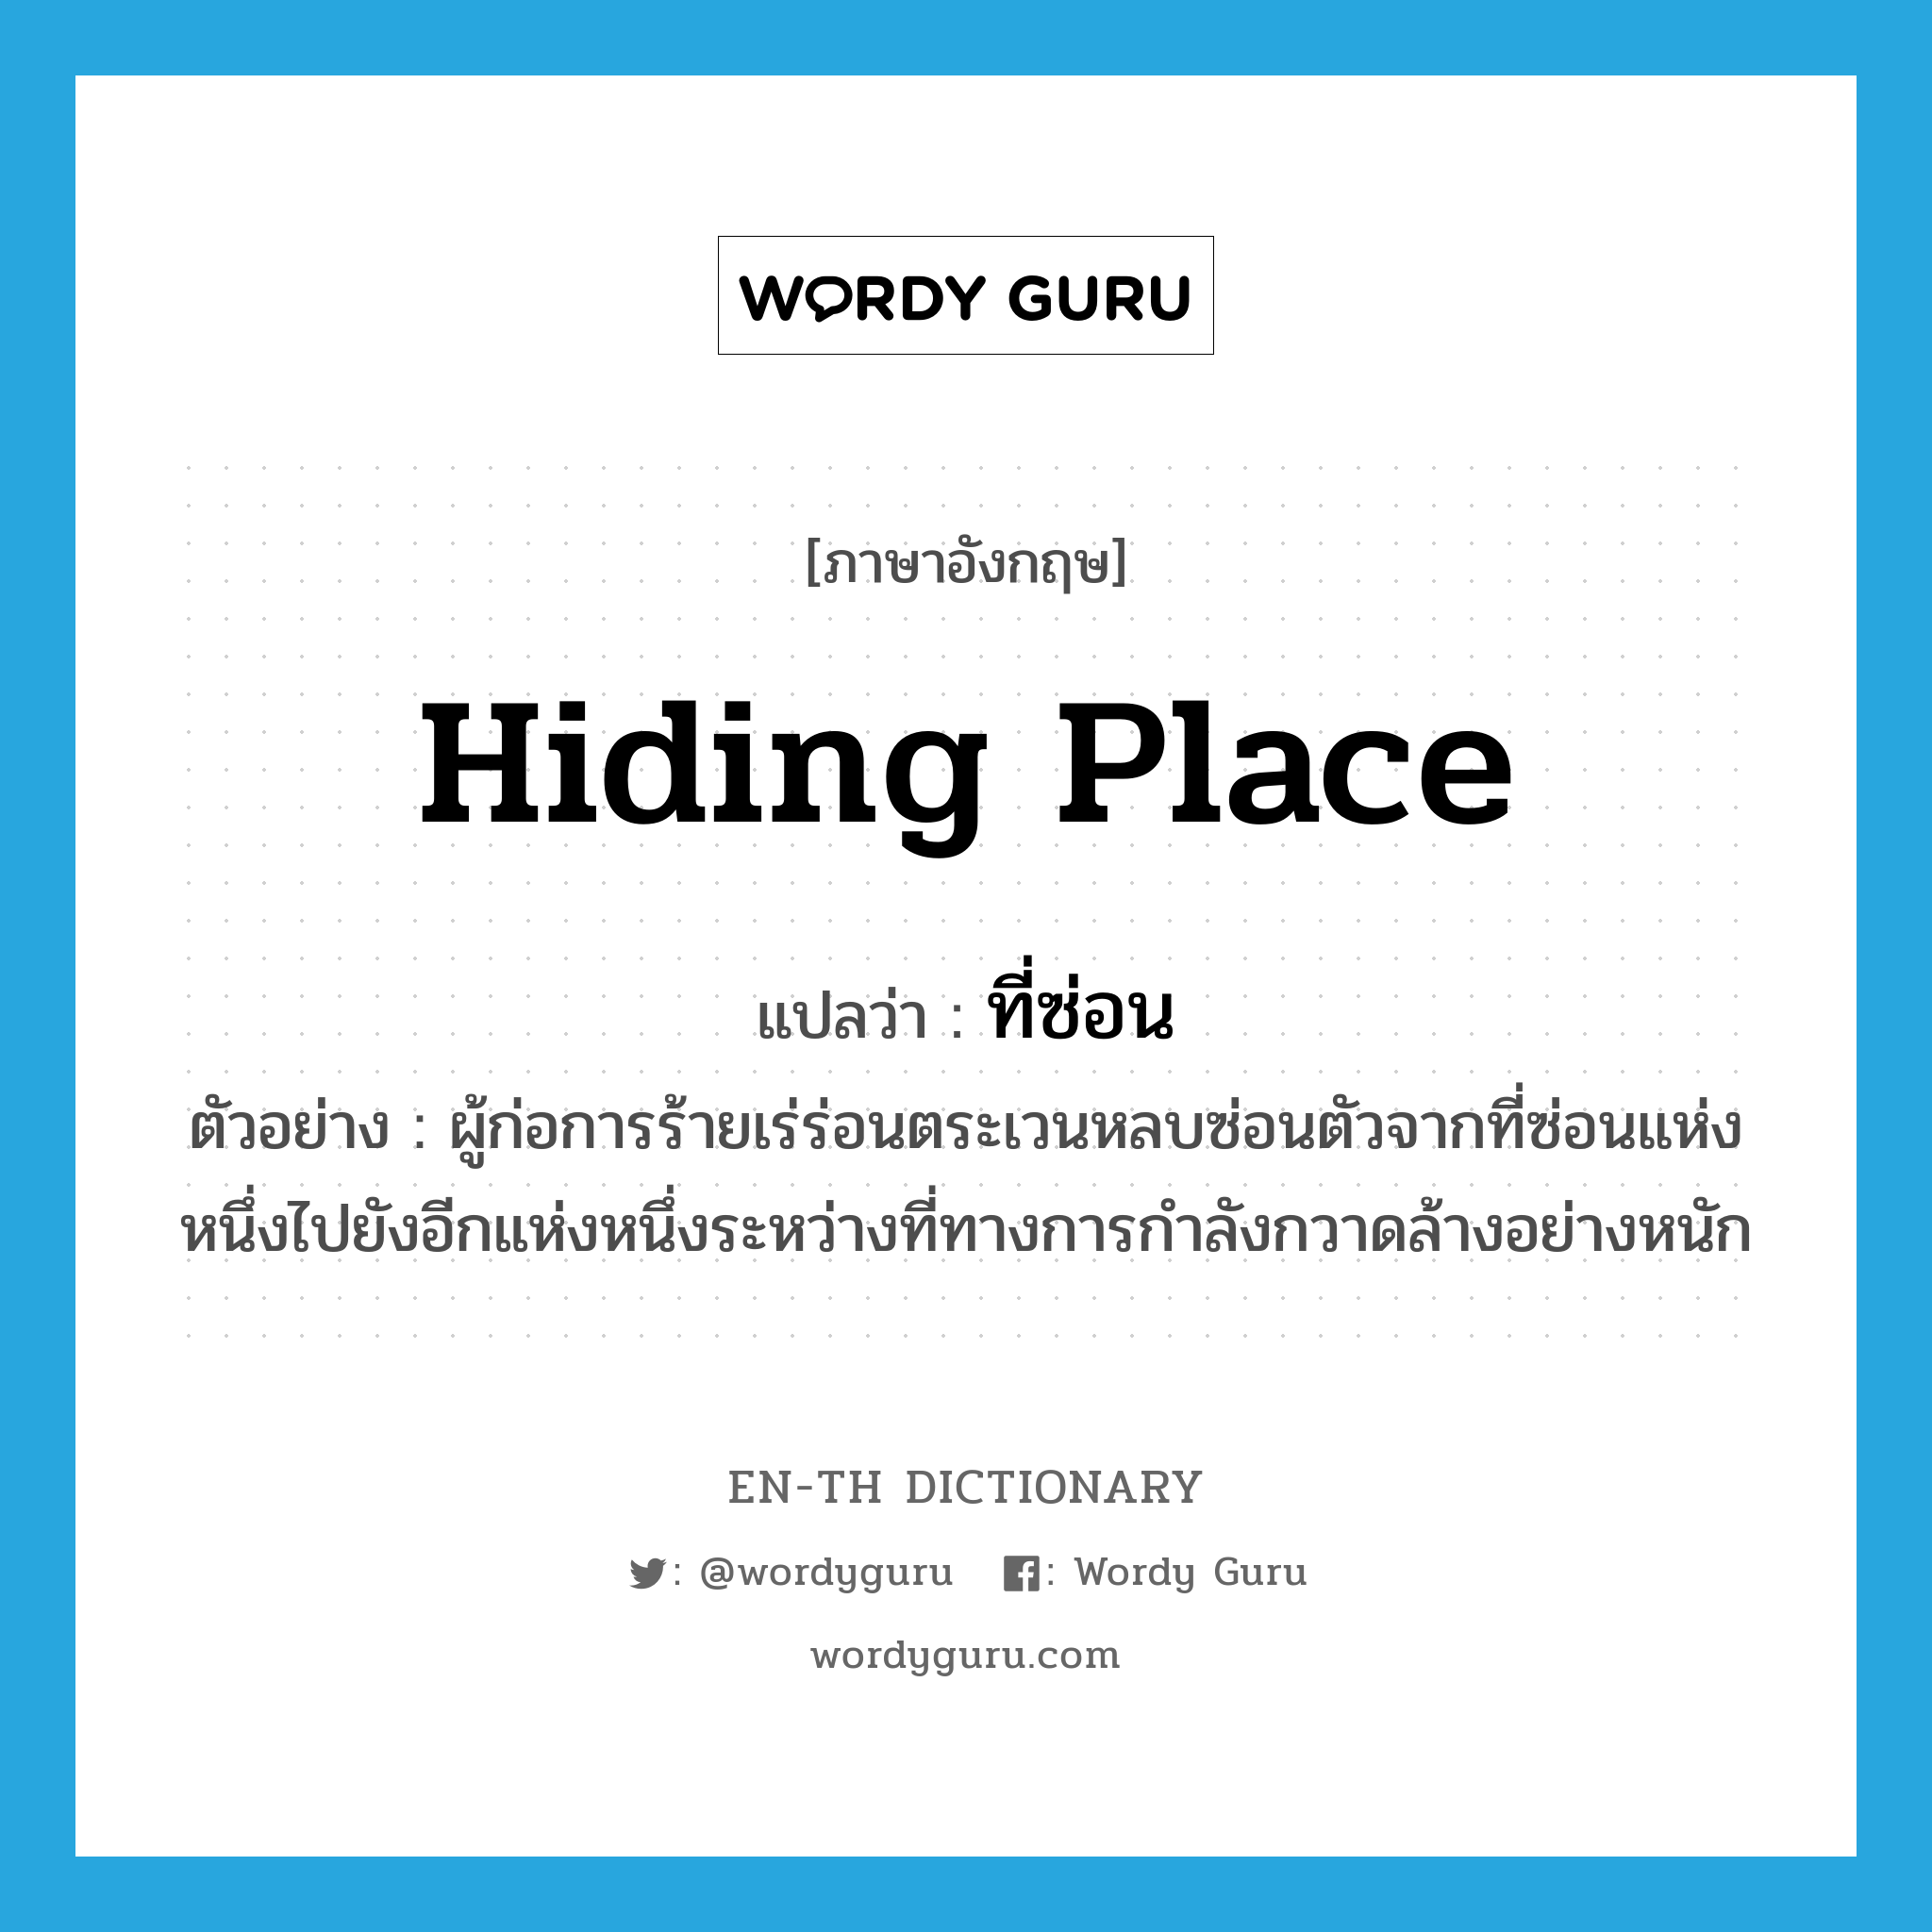 hiding place แปลว่า?, คำศัพท์ภาษาอังกฤษ hiding place แปลว่า ที่ซ่อน ประเภท N ตัวอย่าง ผู้ก่อการร้ายเร่ร่อนตระเวนหลบซ่อนตัวจากที่ซ่อนแห่งหนึ่งไปยังอีกแห่งหนึ่งระหว่างที่ทางการกำลังกวาดล้างอย่างหนัก หมวด N